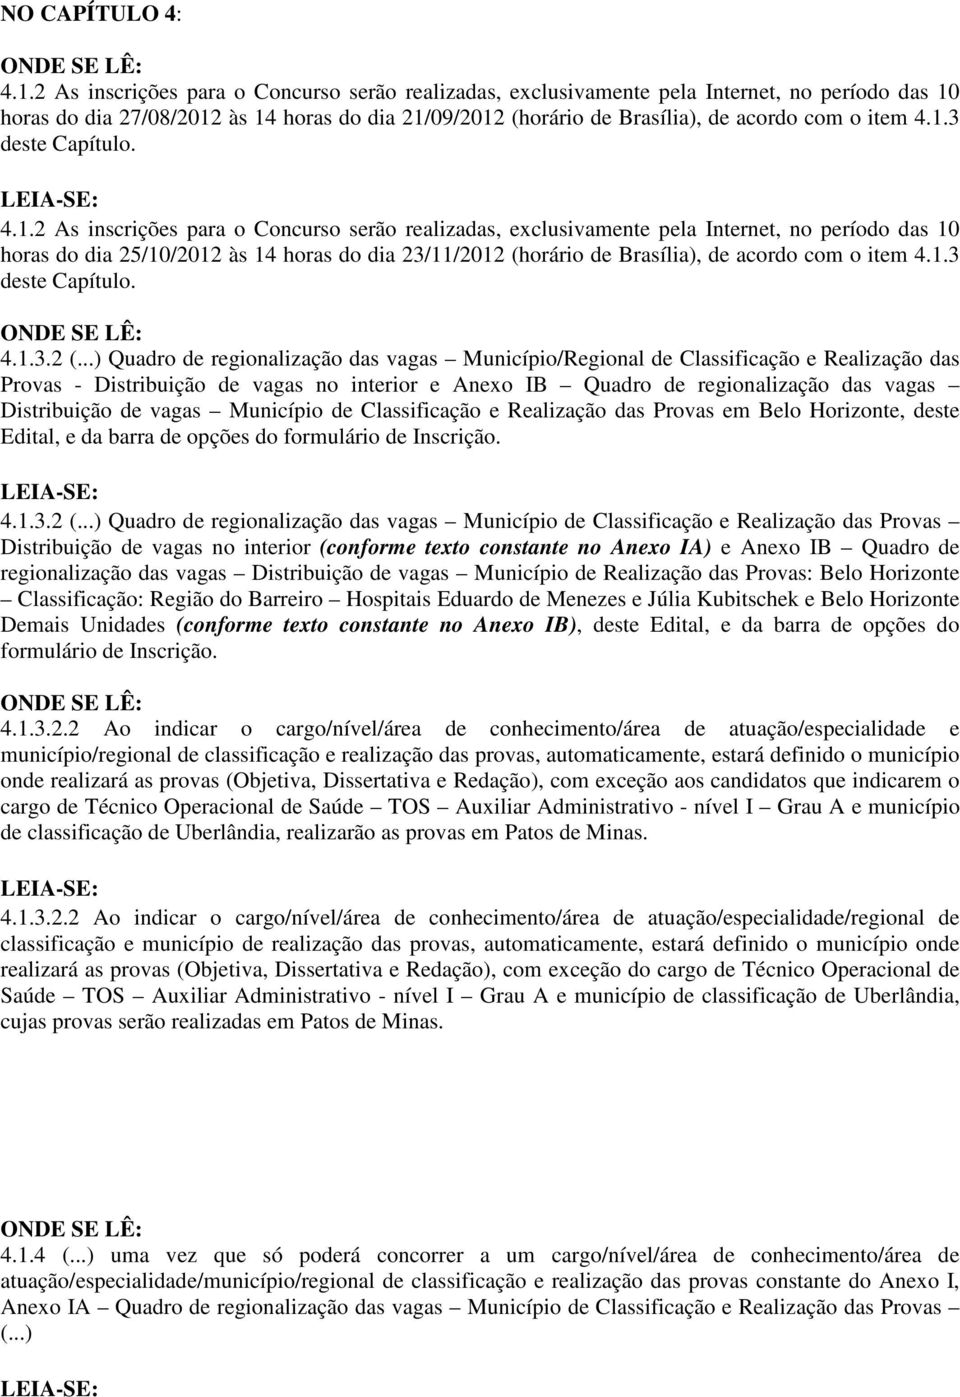 4.1.2 As inscrições para o Concurso serão realizadas, exclusivamente pela Internet, no período das 10 horas do dia 25/10/2012 às 14 horas do dia 23/11/2012 (horário de Brasília), de acordo com o item